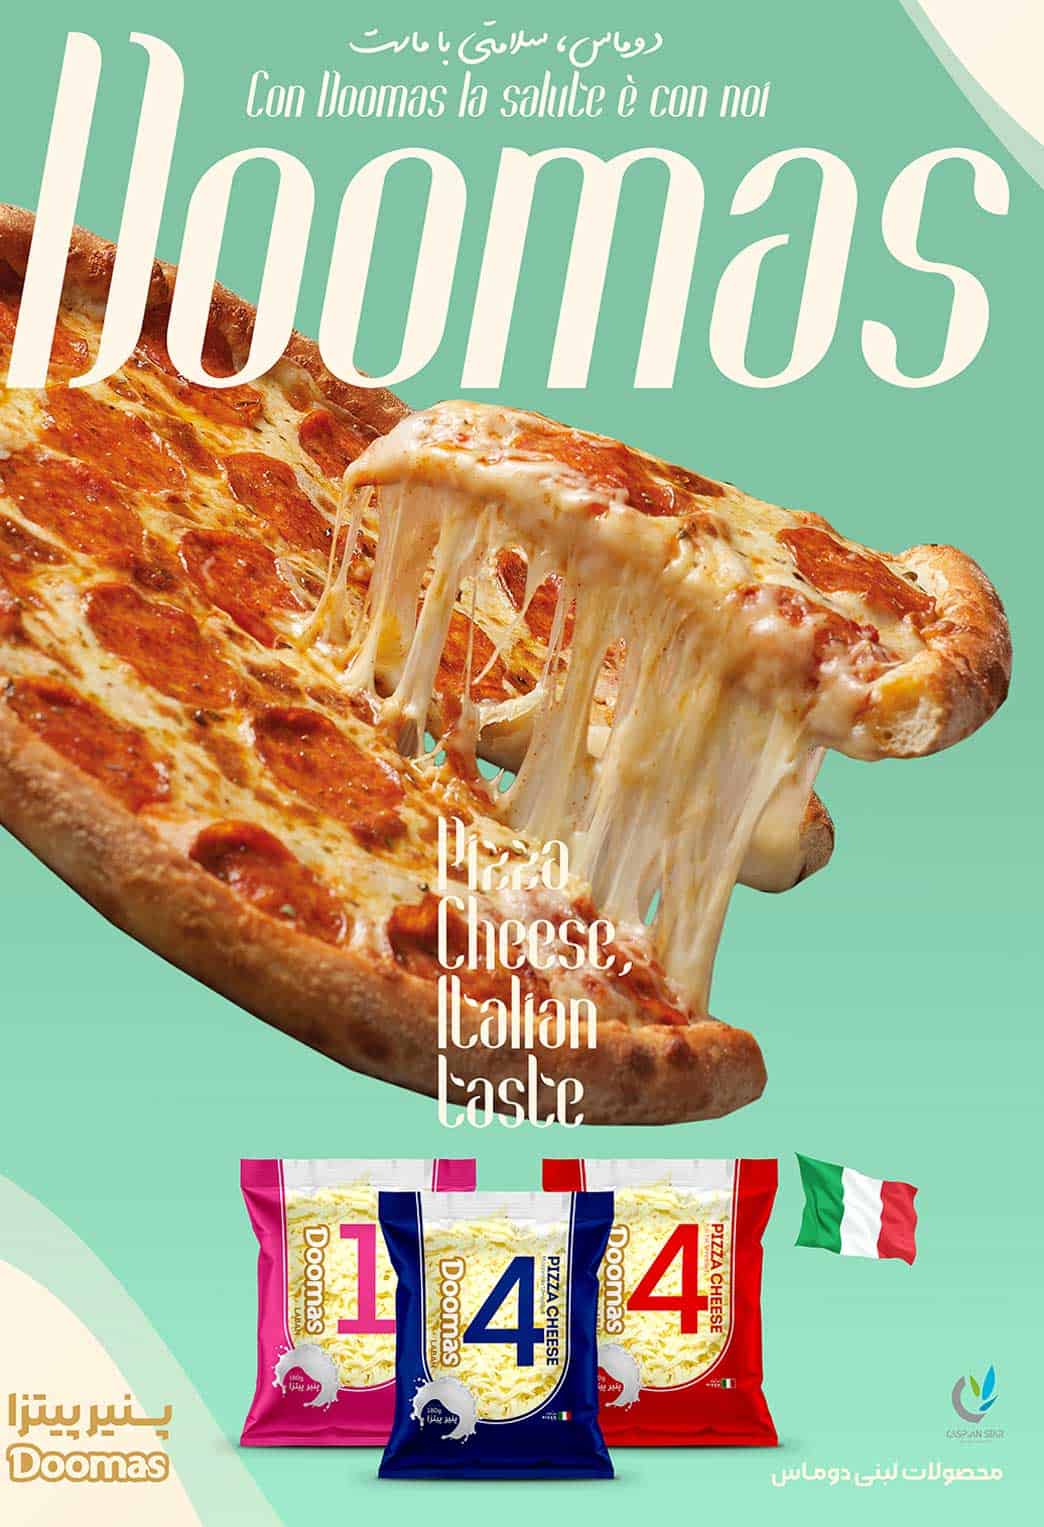 پوستر تبلیغاتی در باره پنیر پیتزا موزاریلا ۱۸۰ گرم دوماس